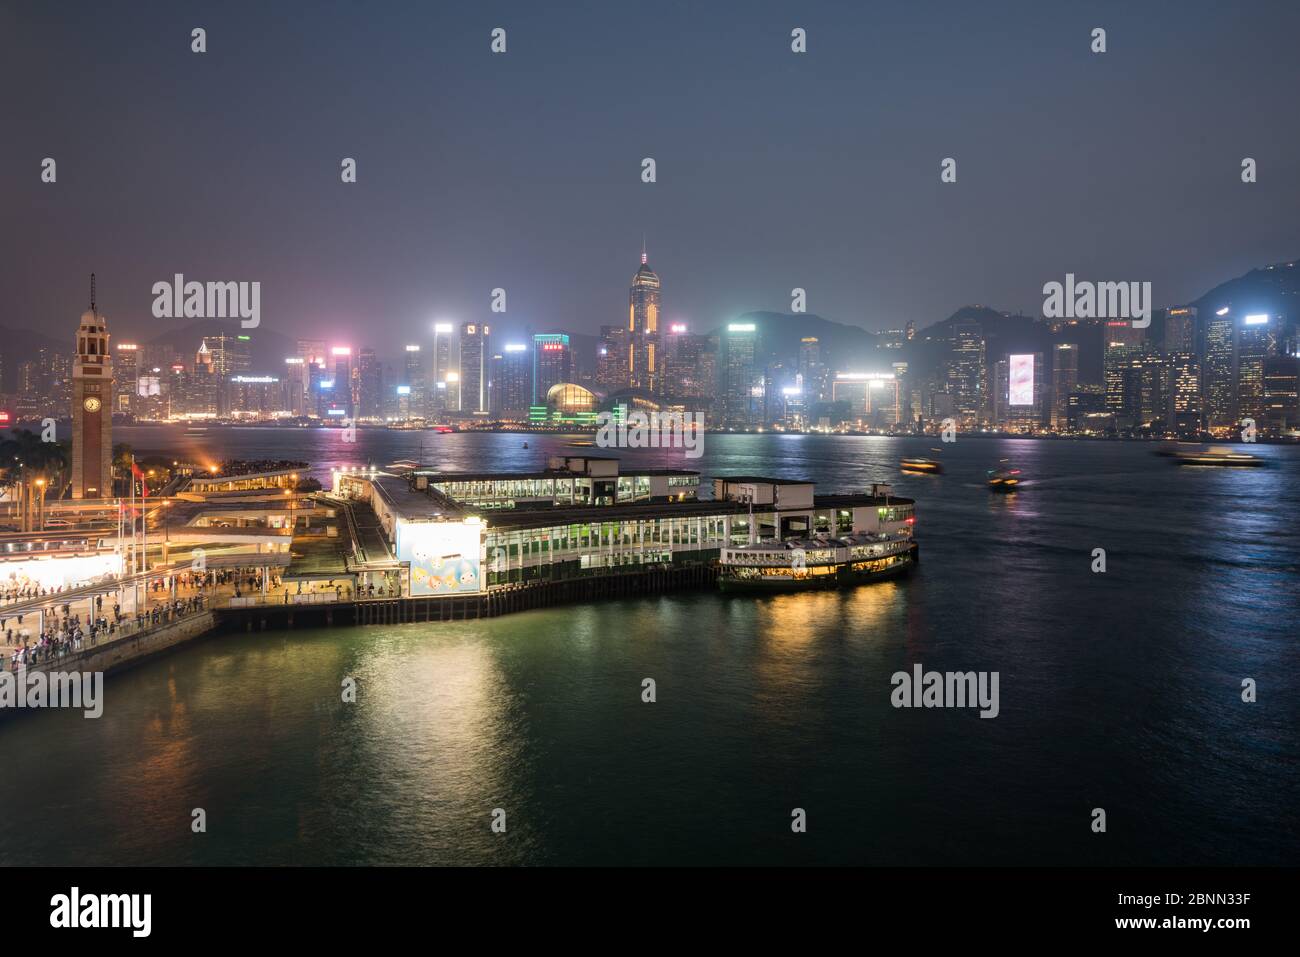 China, Hong Kong, Victoria Harbor at night Stock Photo